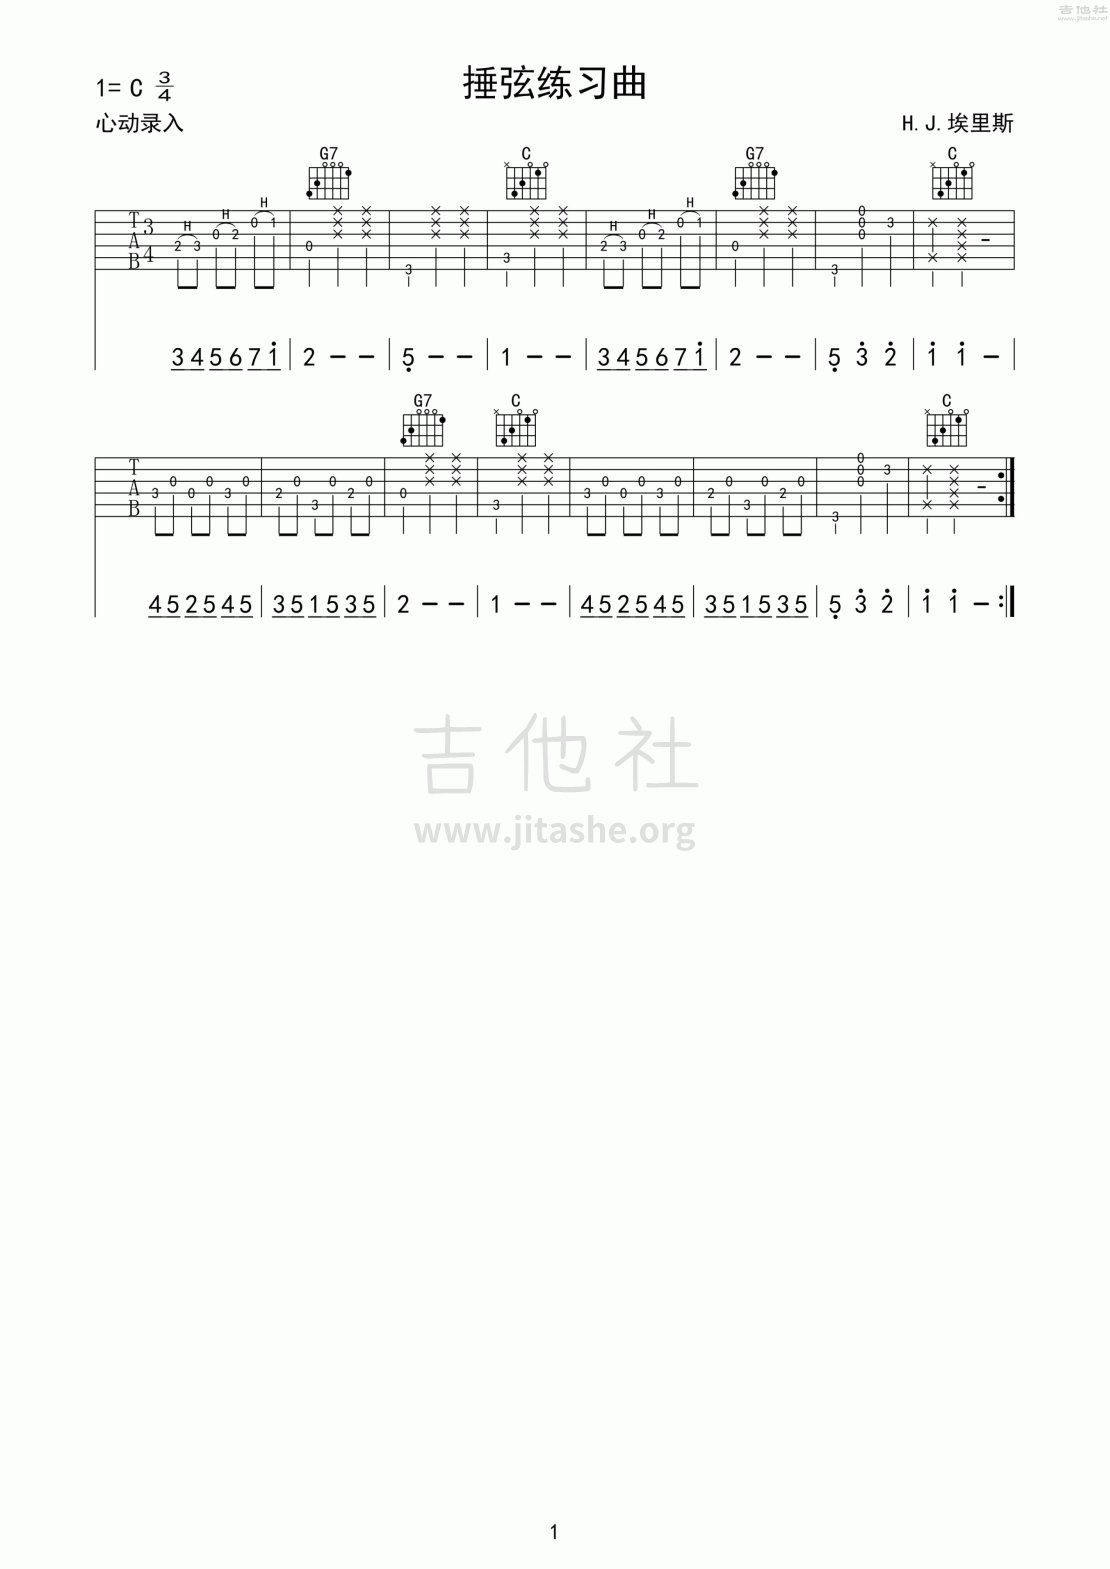 打印:捶弦练习曲吉他谱_练习曲_心动吉他曲谱集第1集_077.gif